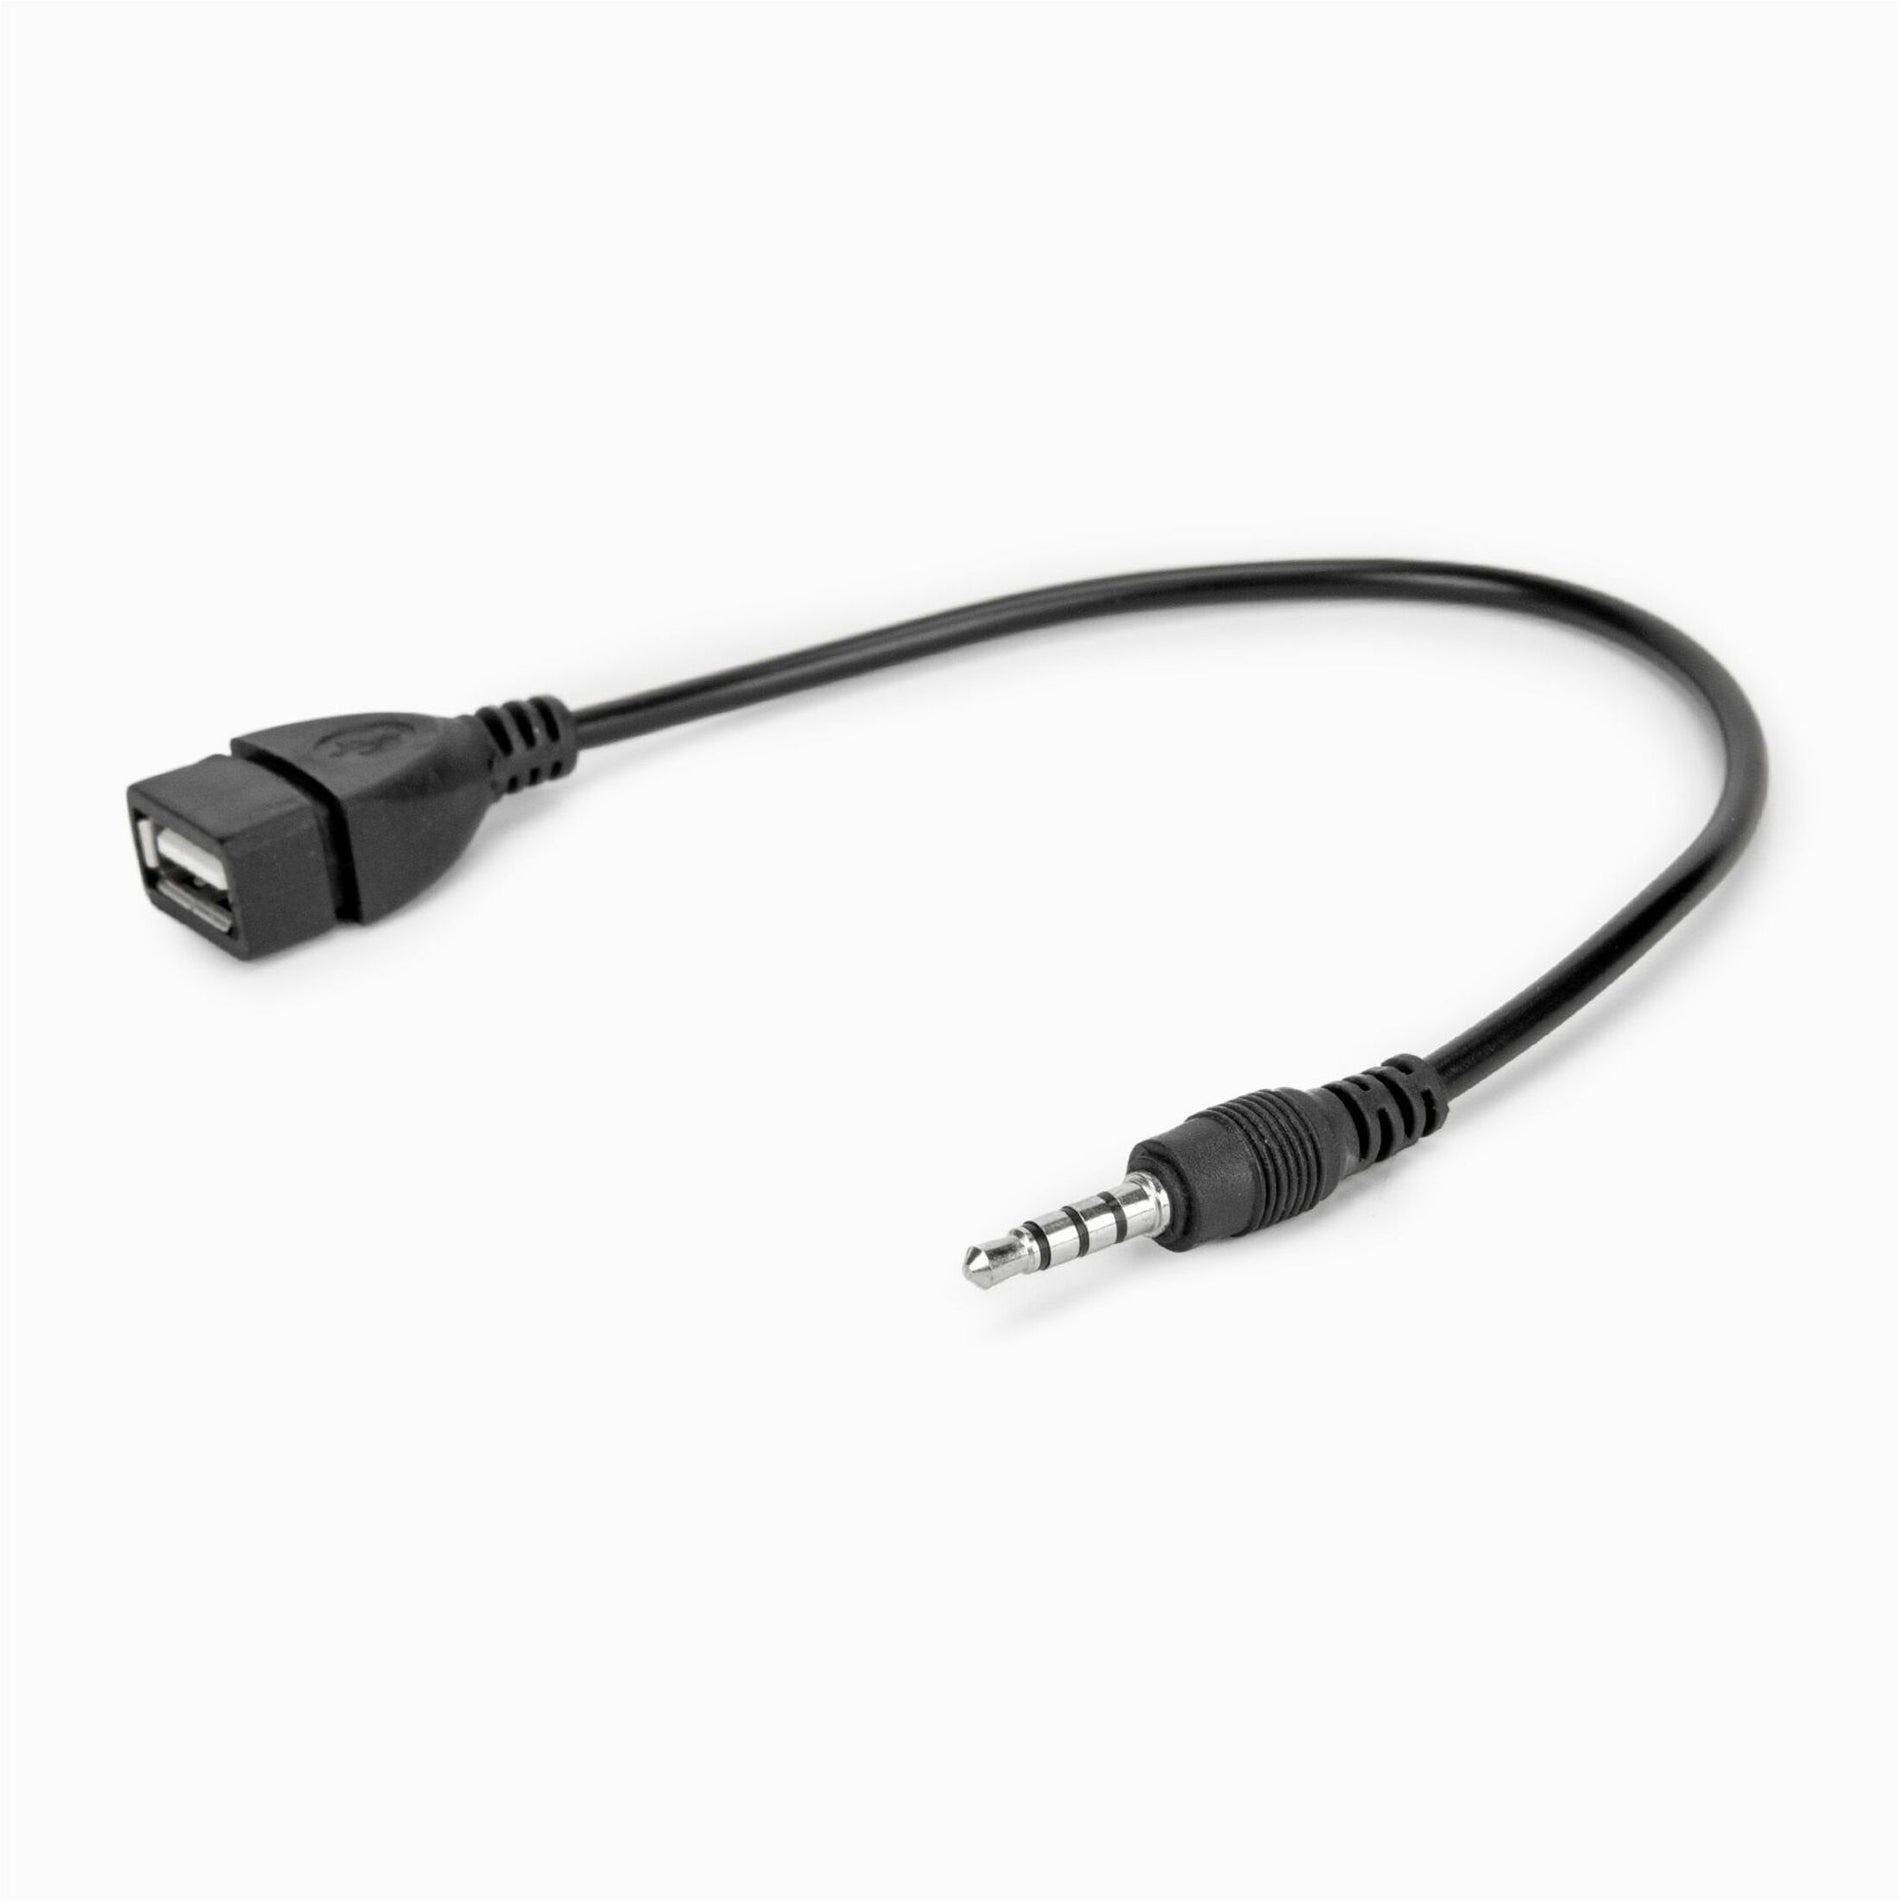 罗克斯托 Y10A297-B1 USB-A（女）至3.5毫米音频耳机插孔（男）适配器，高级音频适配器 品牌名称：罗克斯托